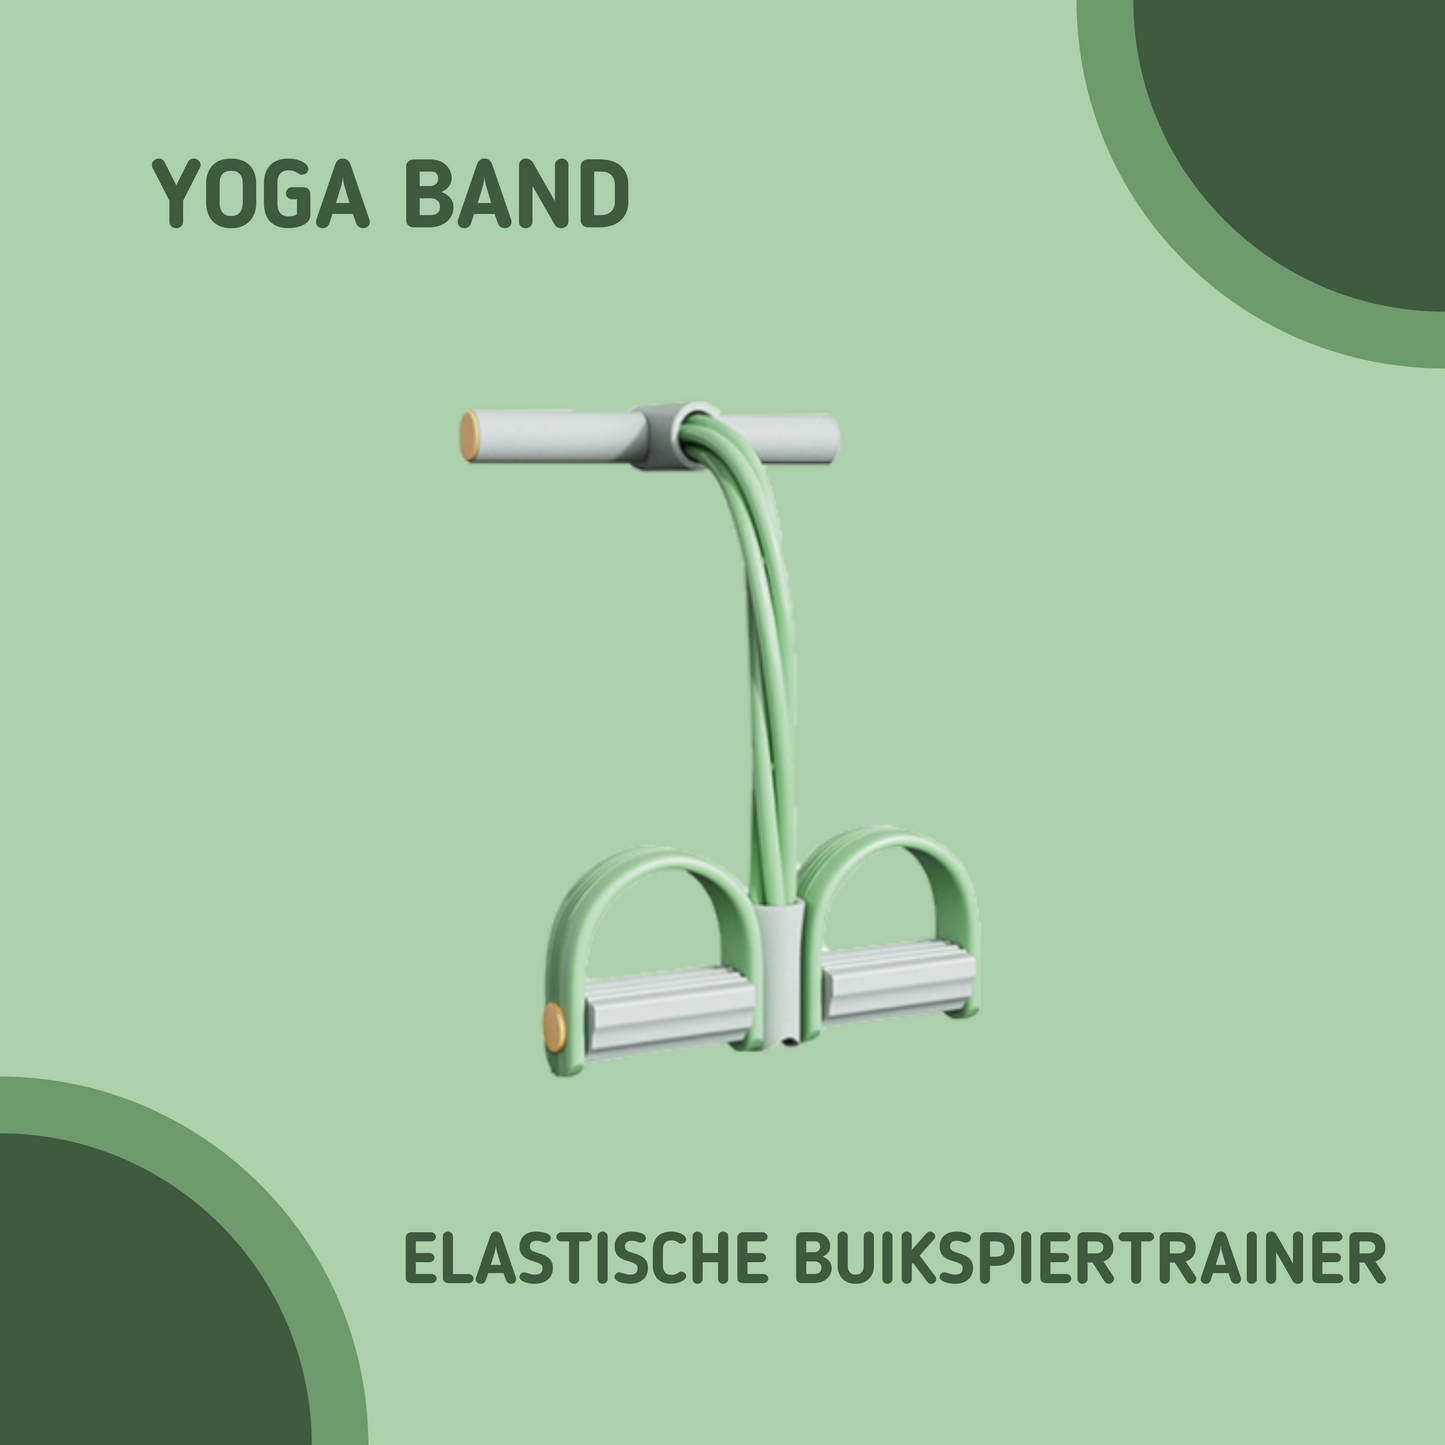 MOLOO-Elastische-Buikspiertrainers-Groen-Grijs-Yoga-Band-Ab-Trainer